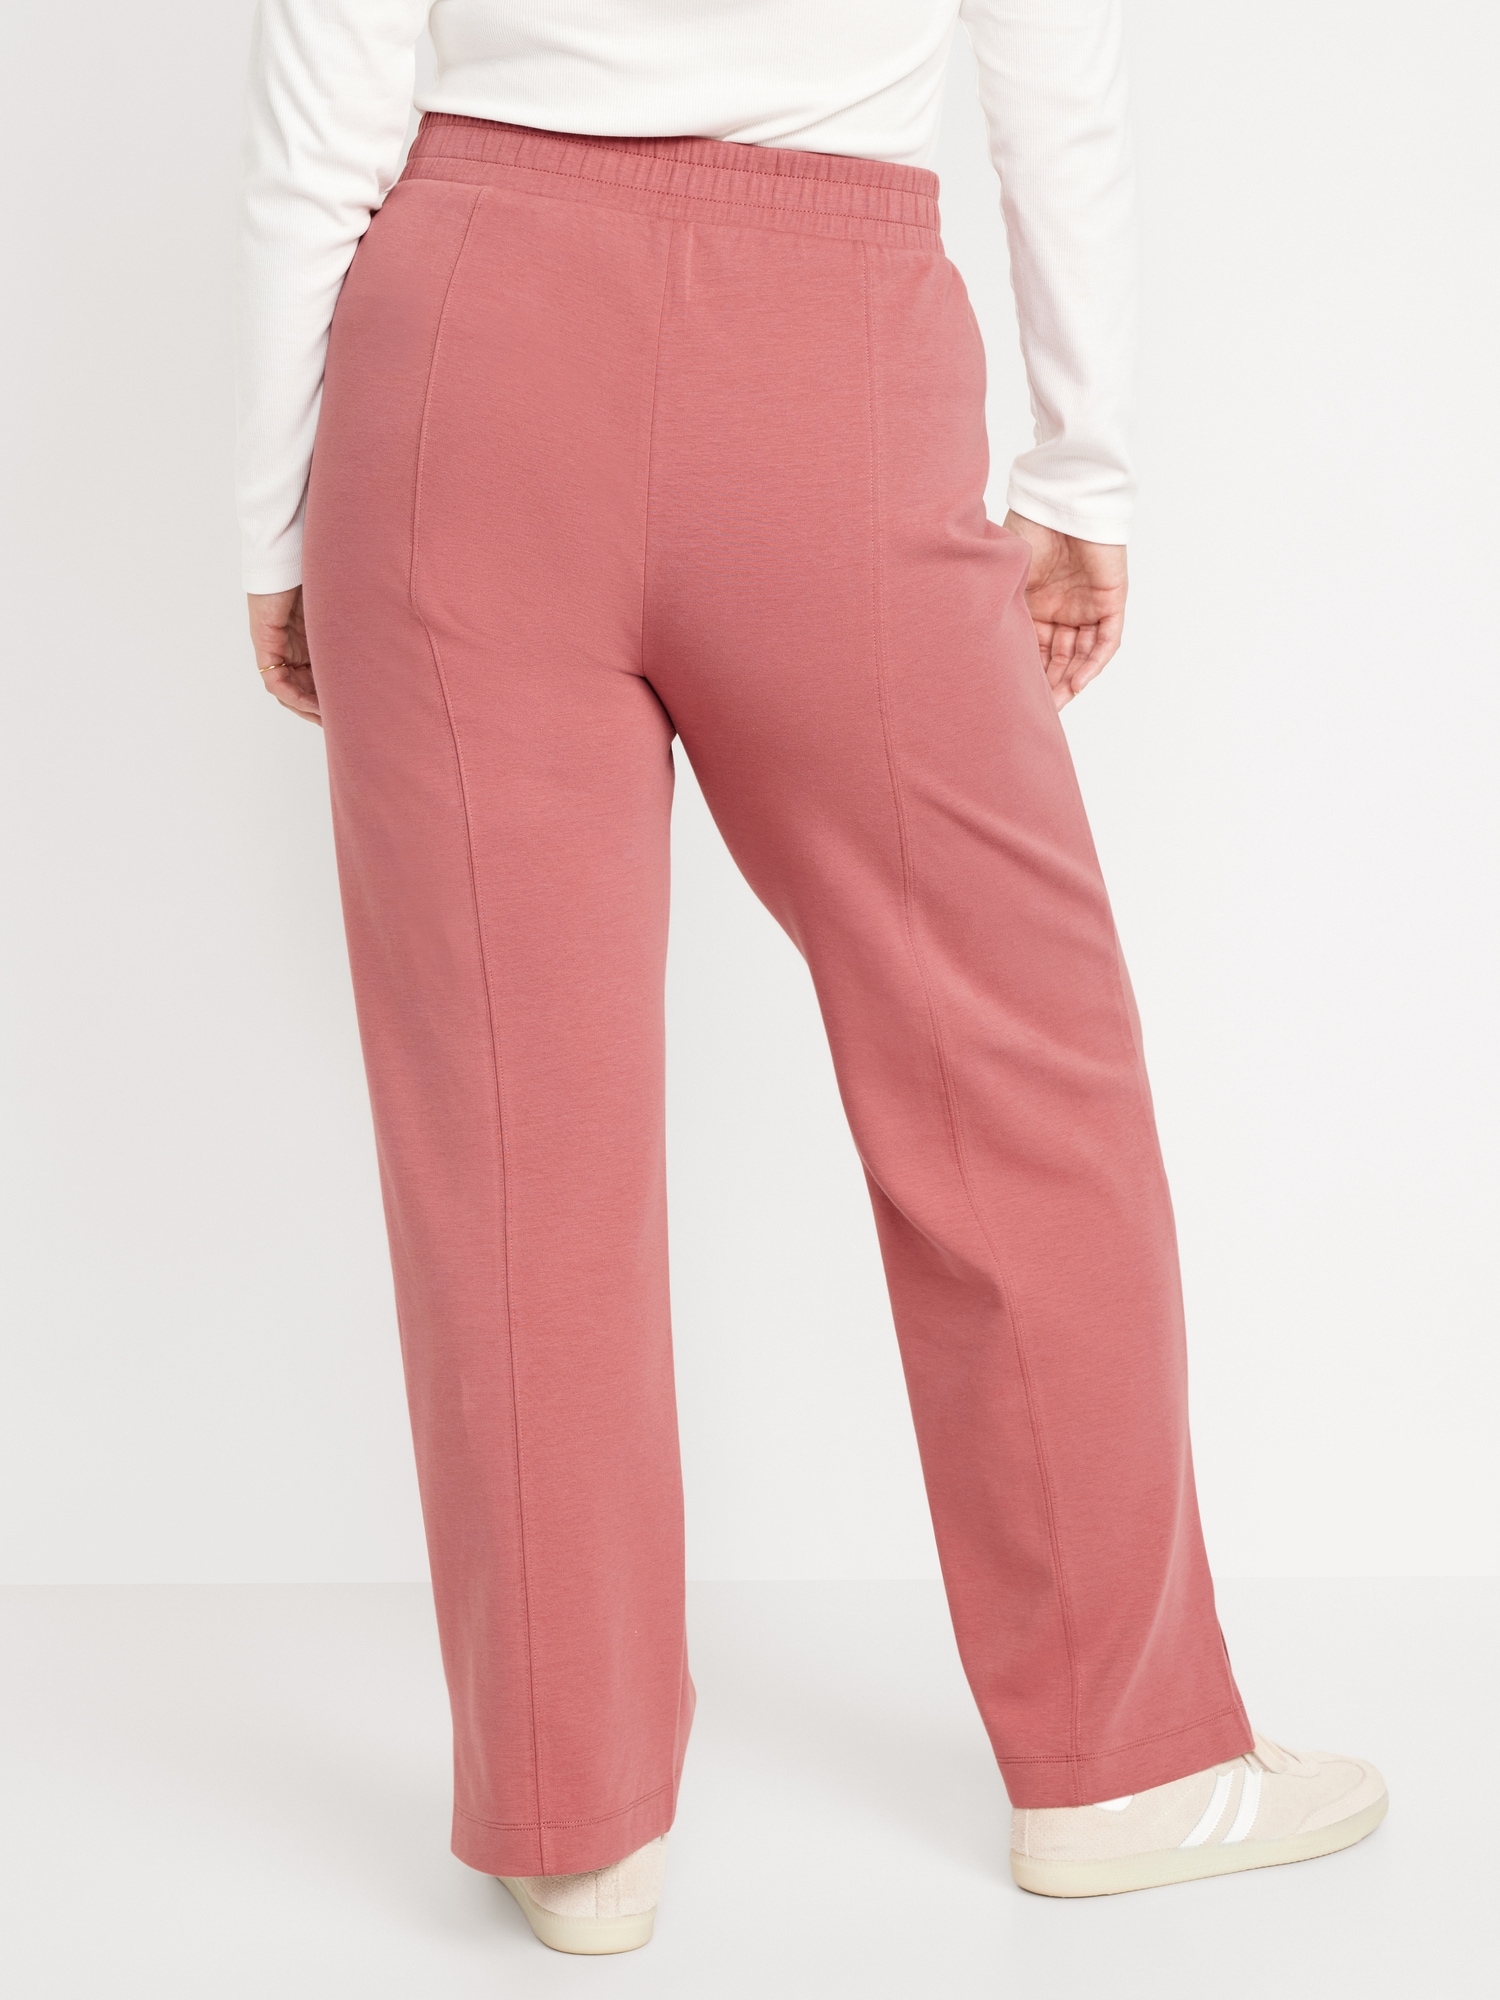 Women Pants High Waist Stretchy Fleece Lined Pants Pink XL